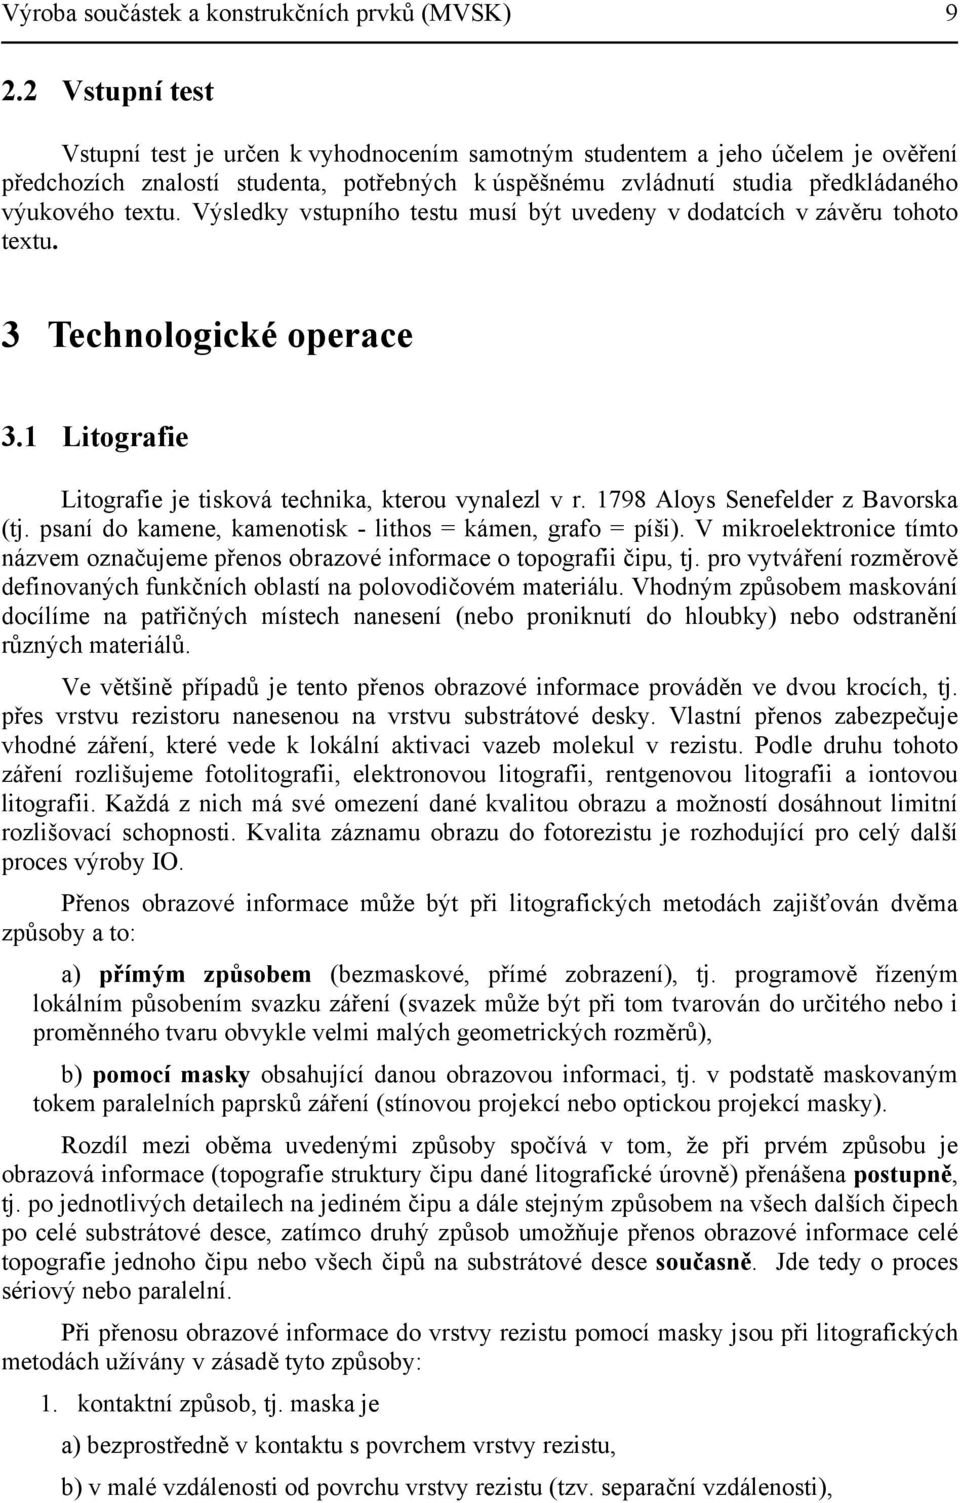 Výsledky vstupního testu musí být uvedeny v dodatcích v závěru tohoto textu. 3 Technologické operace 3.1 Litografie Litografie je tisková technika, kterou vynalezl v r.